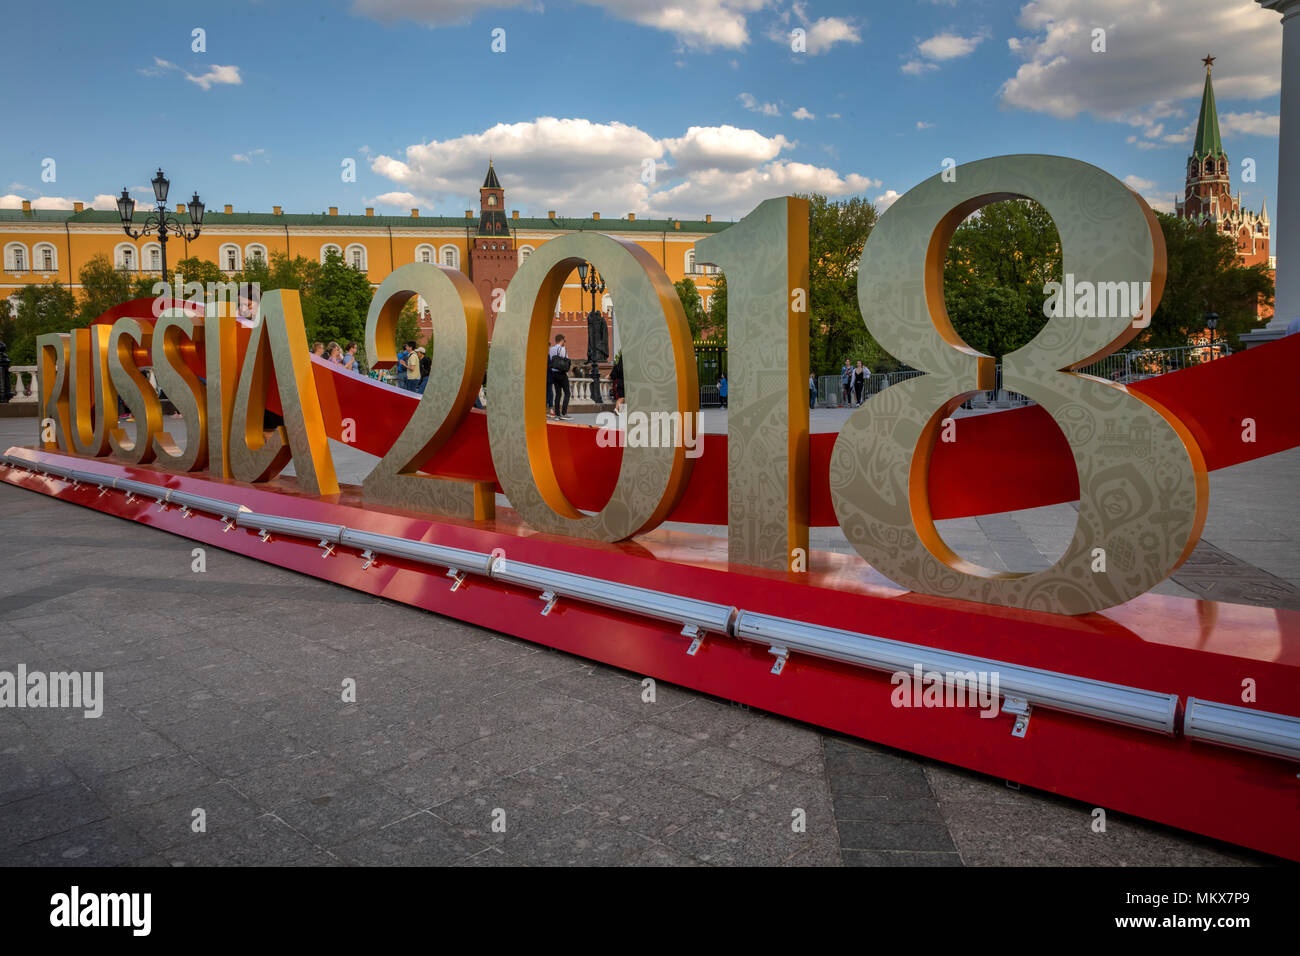 La inscripción "Rusia 2018' instalado antes del comienzo de la Copa Mundial de la FIFA en la Plaza Manege en Moscú, Rusia Foto de stock